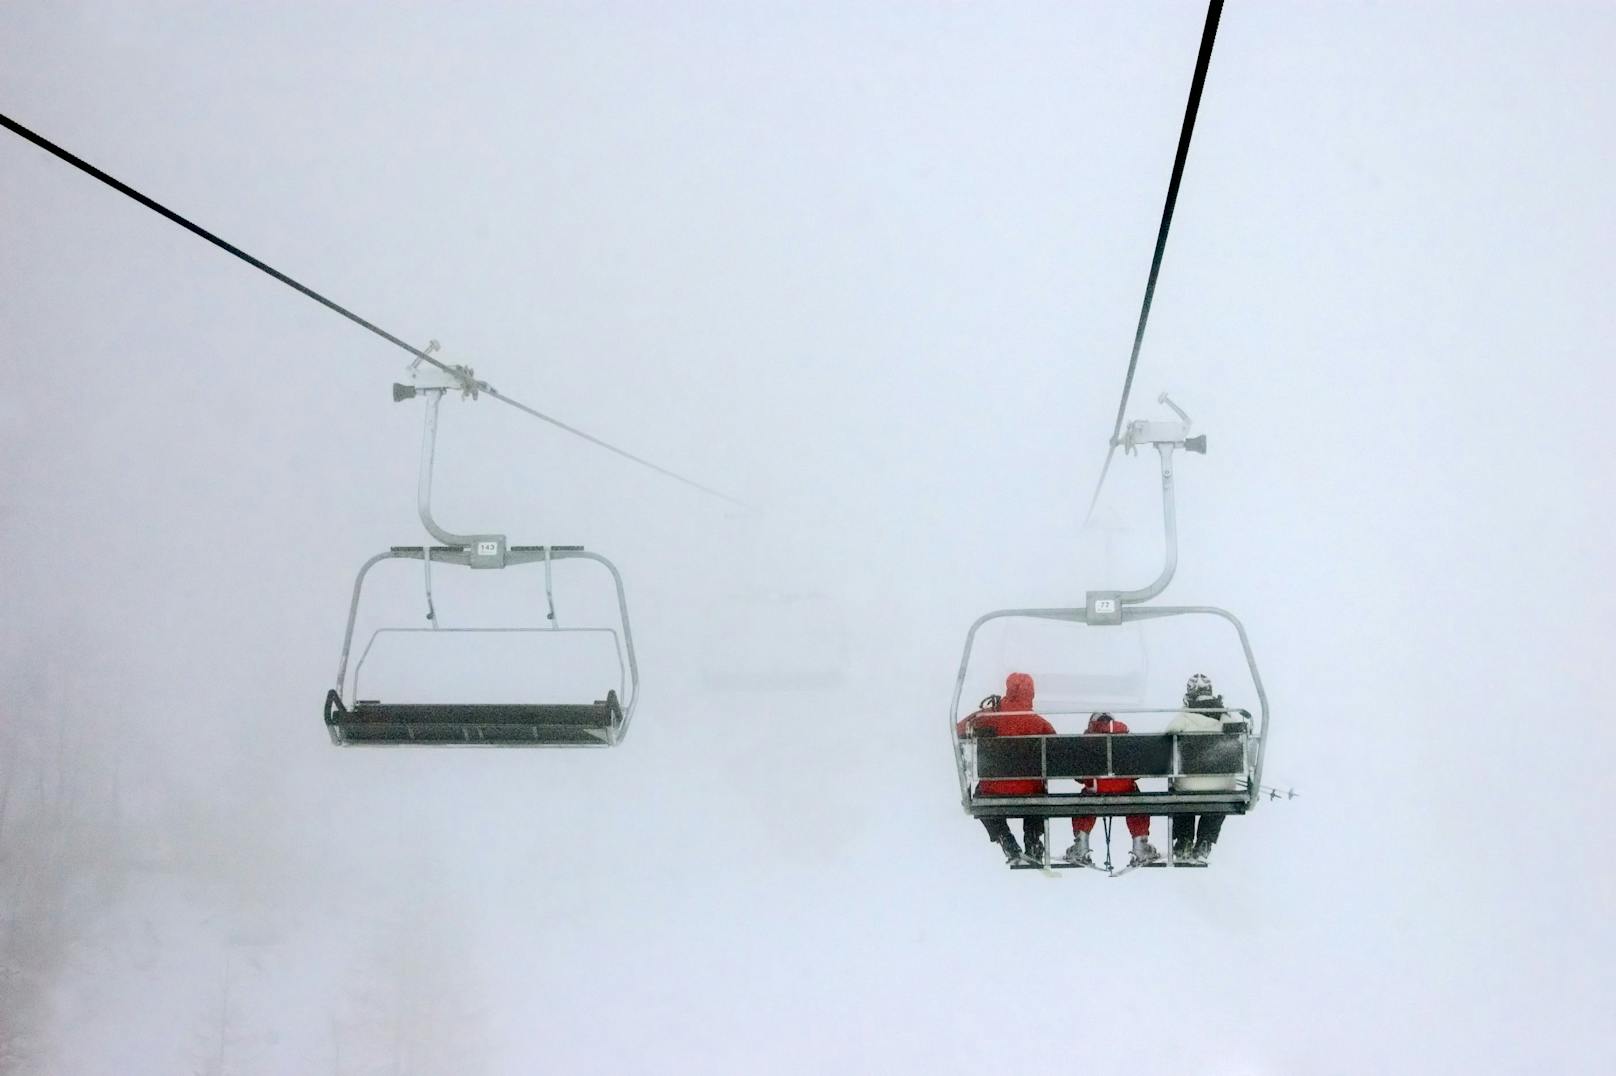 Drama am Skilift – Bub stürzt acht Meter in die Tiefe